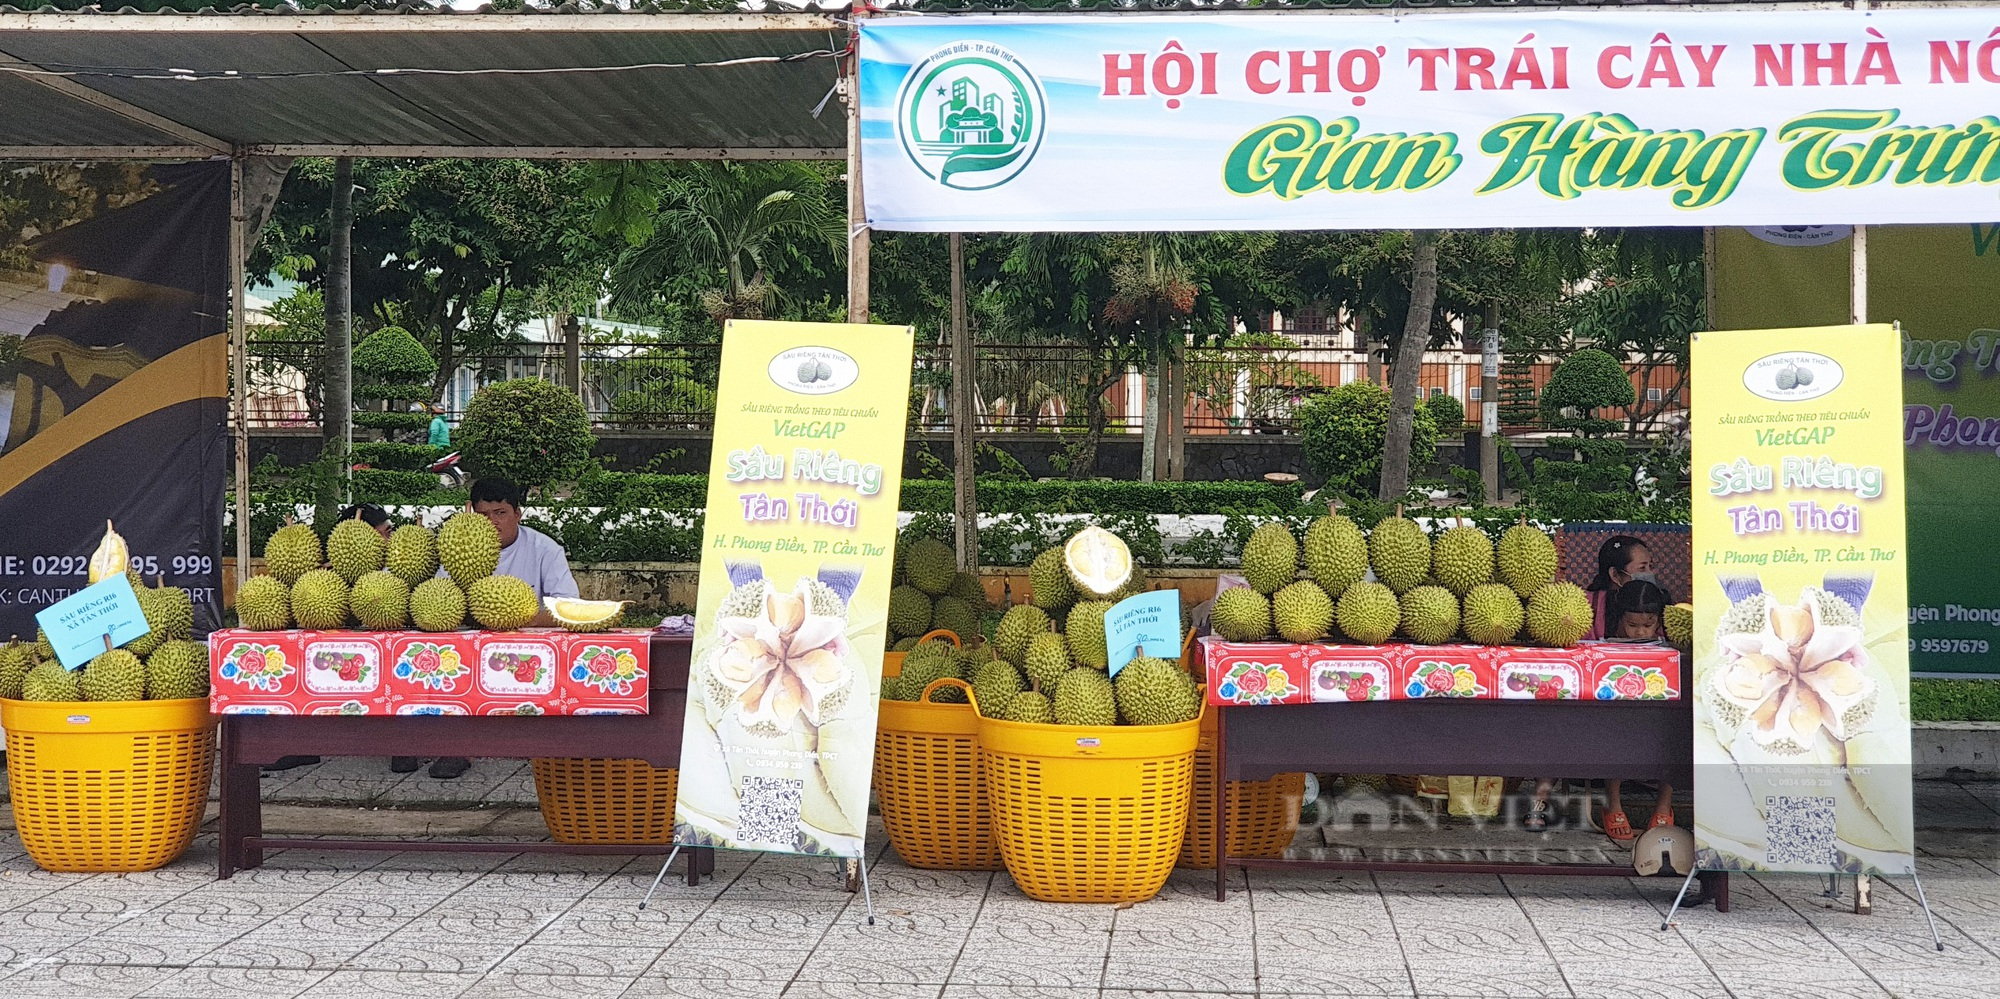 4 loại sầu riêng ngon nhất đang được bán tại hội chợ trái cây miền Tây  - Ảnh 1.